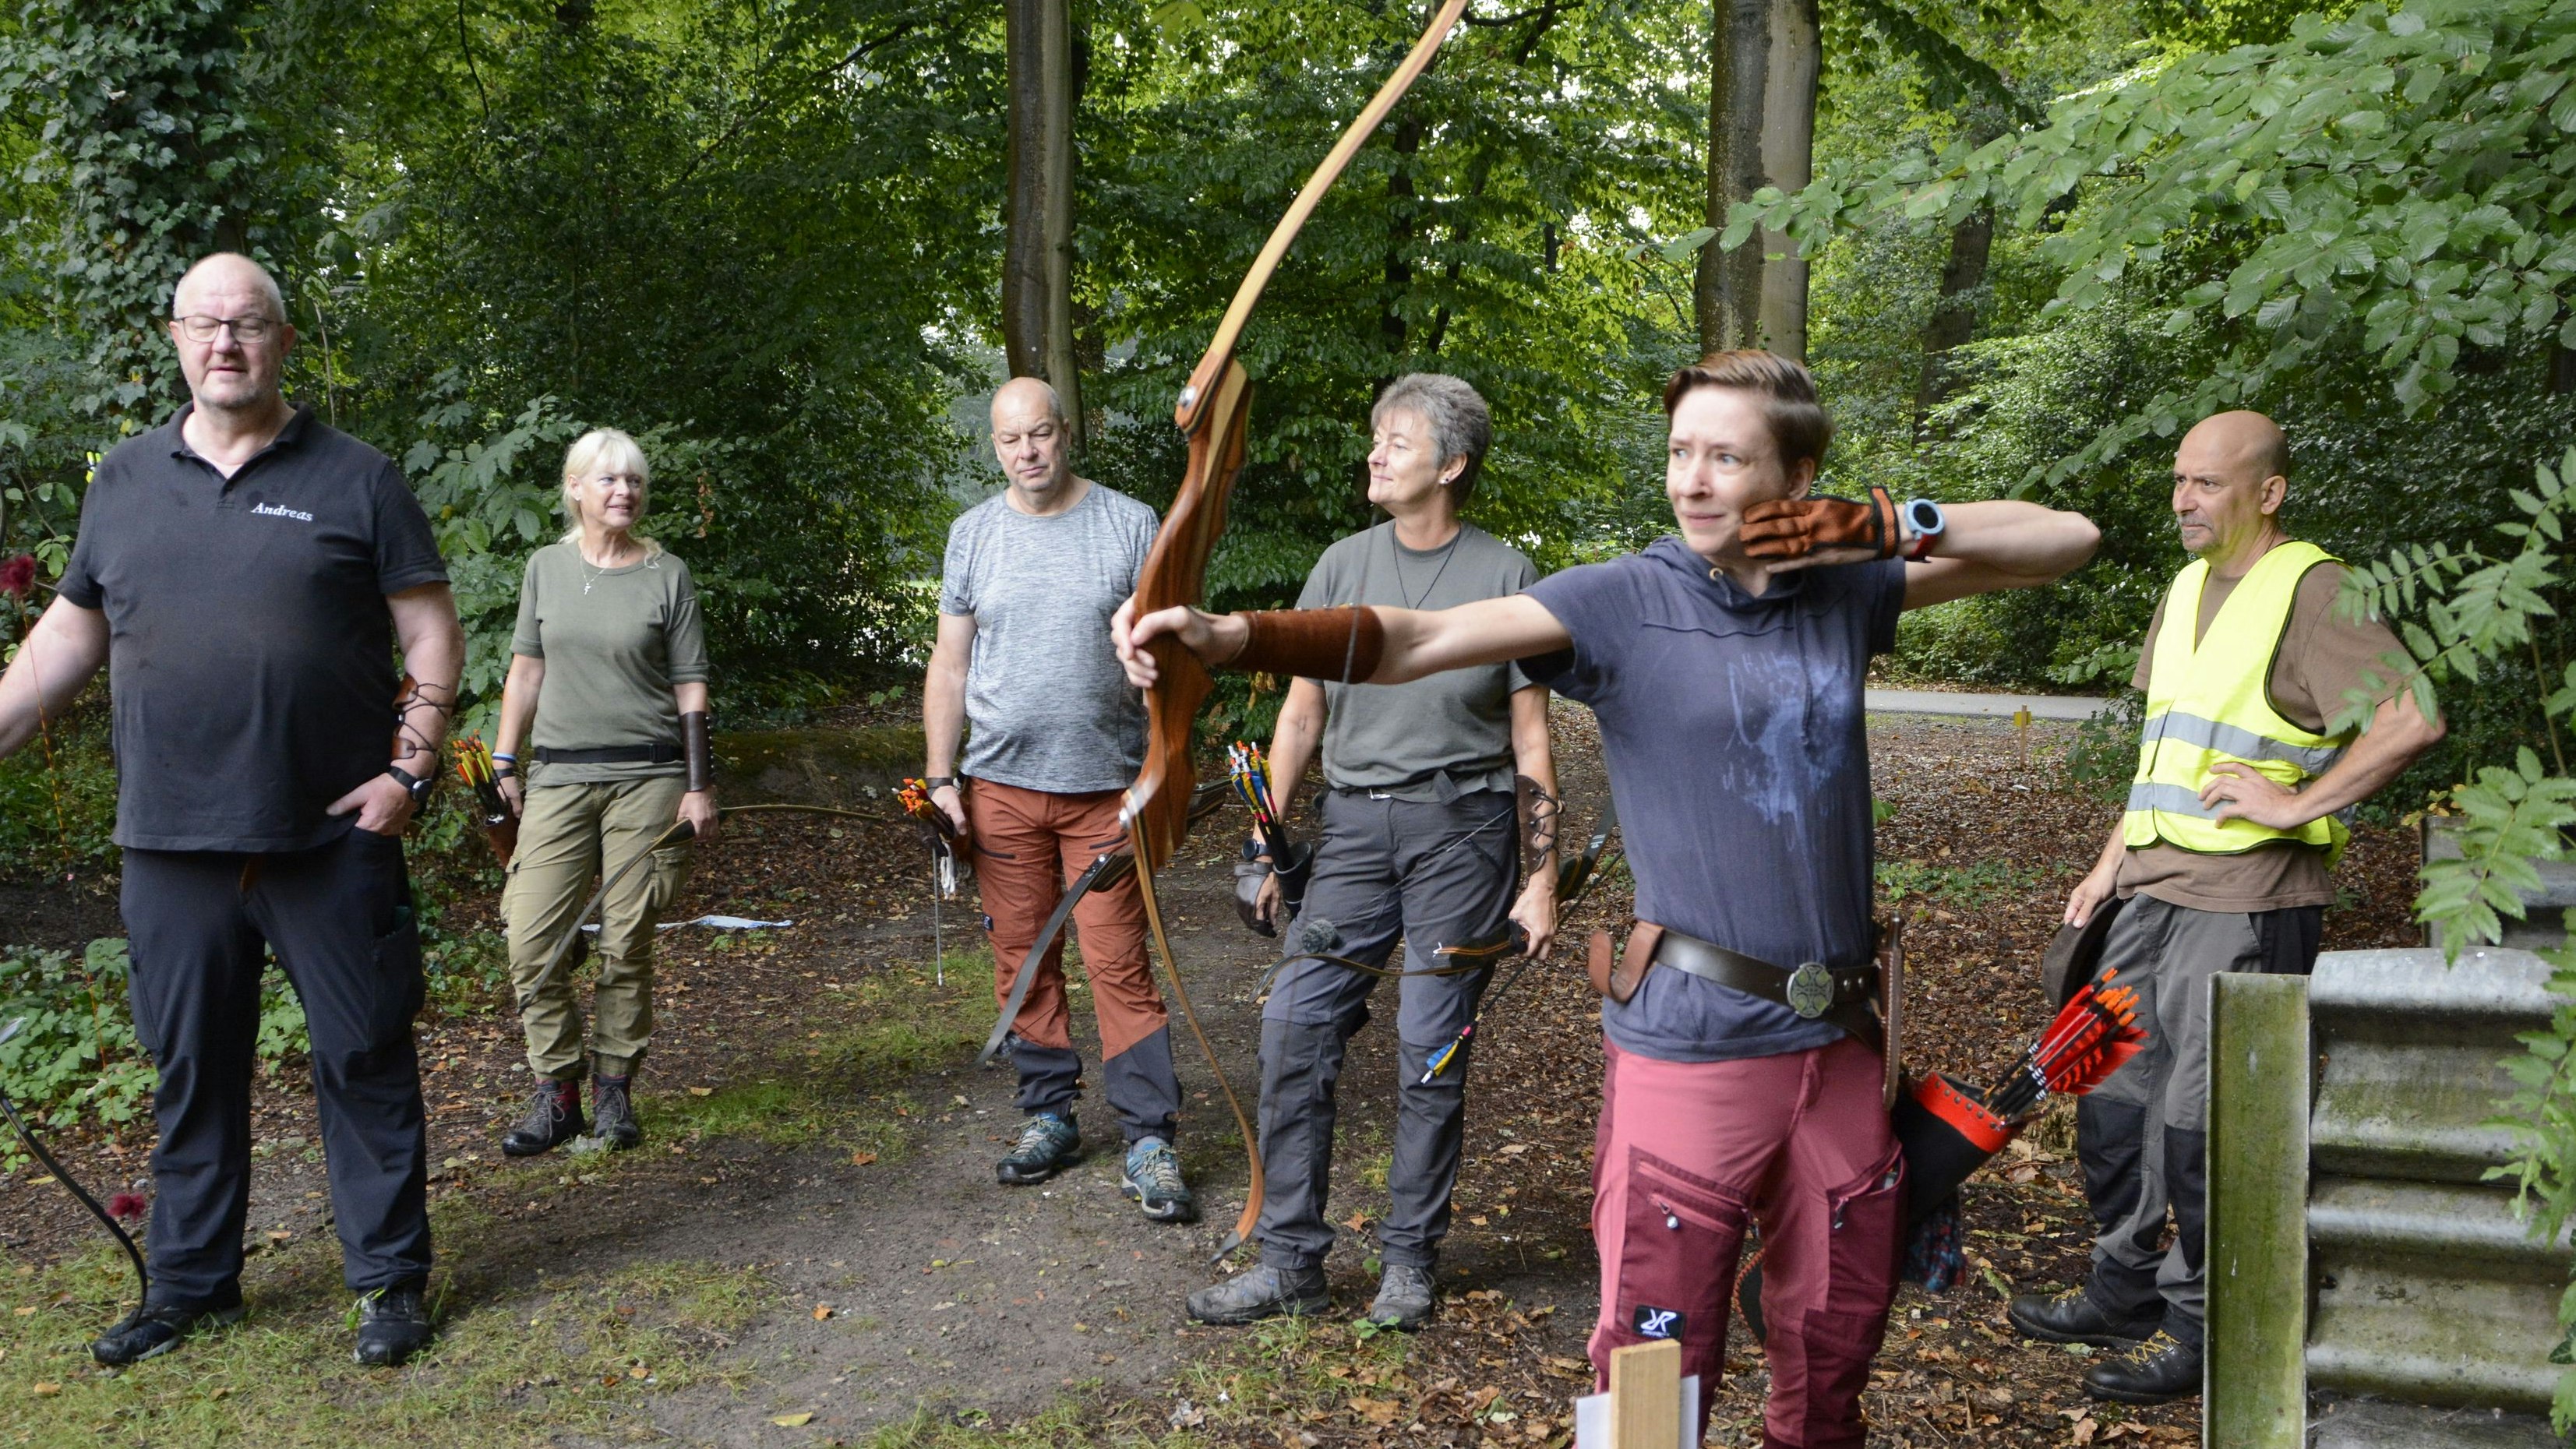 Besuch aus dem Sauerland: Schützinnen und Schützen des Bogensportvereins Sorpesee nahmen am Wettkampf teil. Foto: Rosenbaum